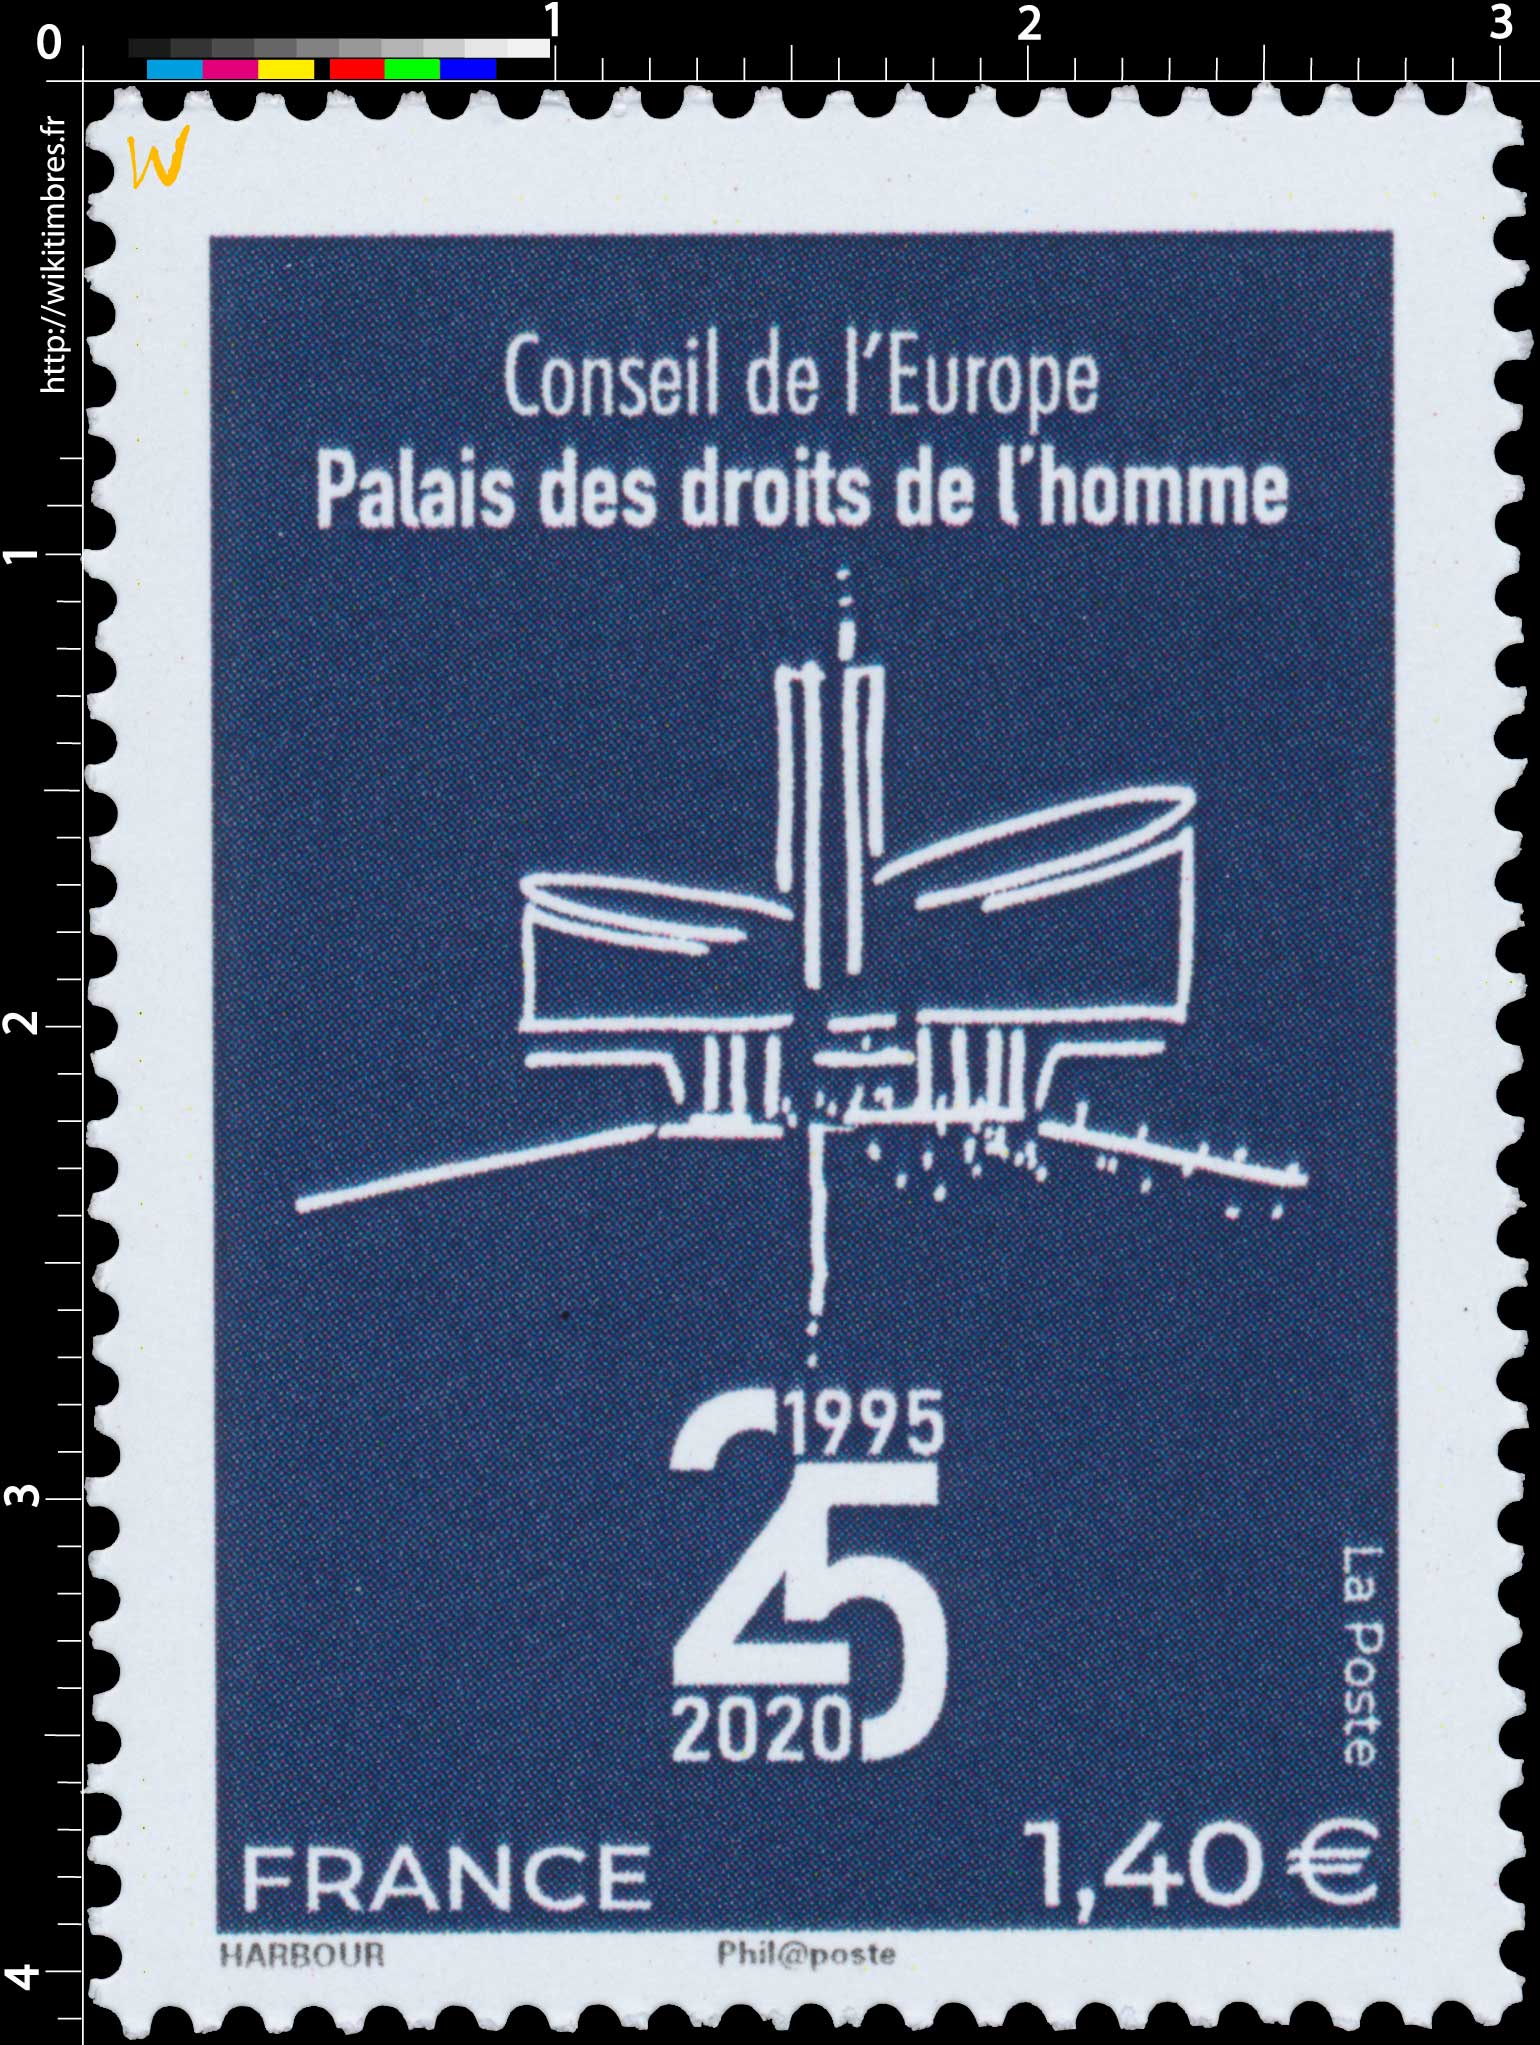 CONSEIL DE L’EUROPE PALAIS DES DROITS DE L’HOMME 1995-2020